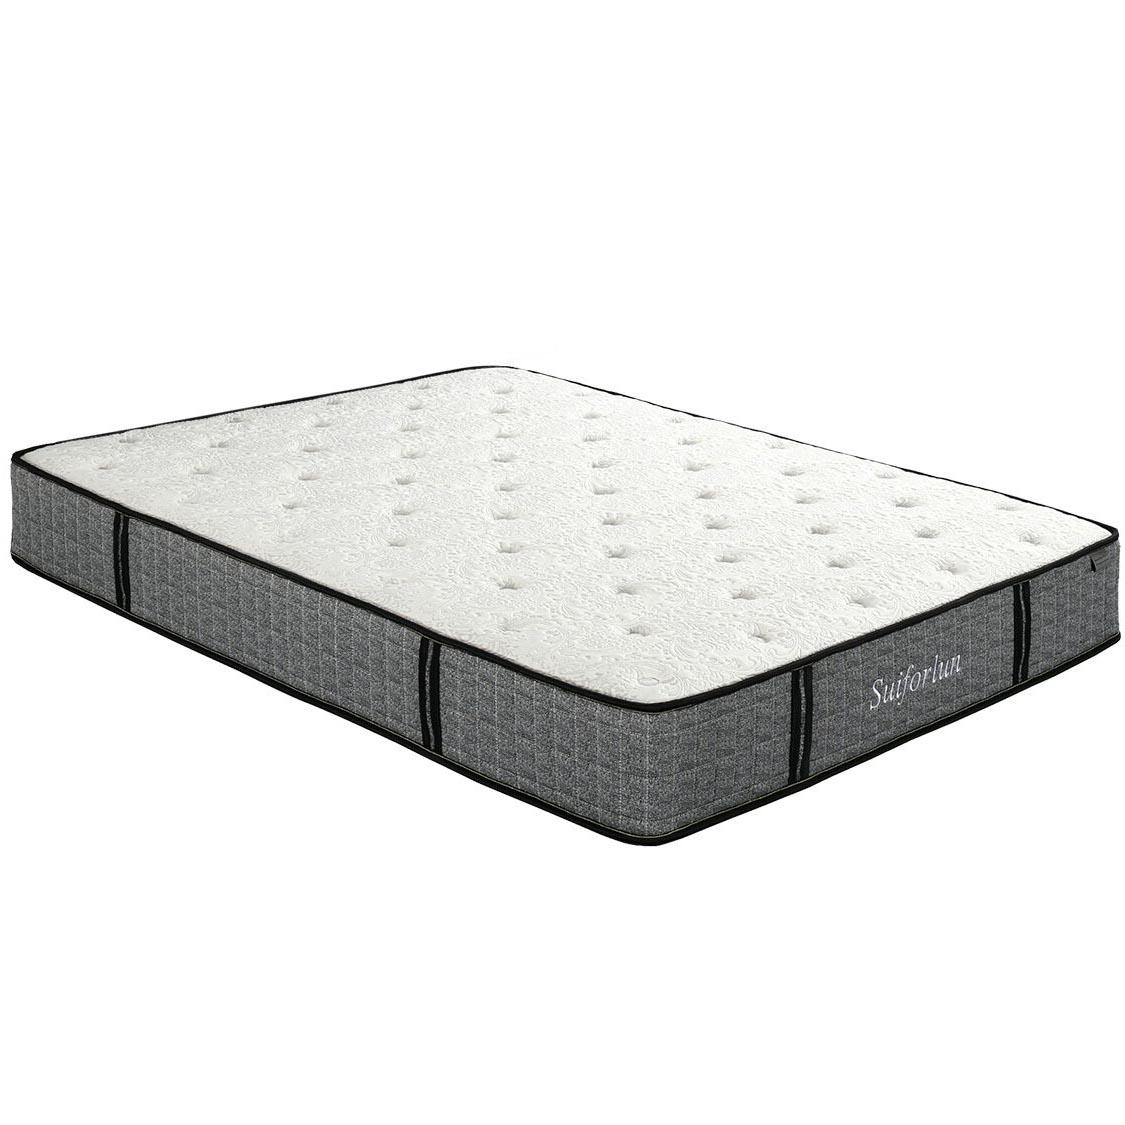 Suiforlun mattress chicest gel hybrid mattress trade partner-2